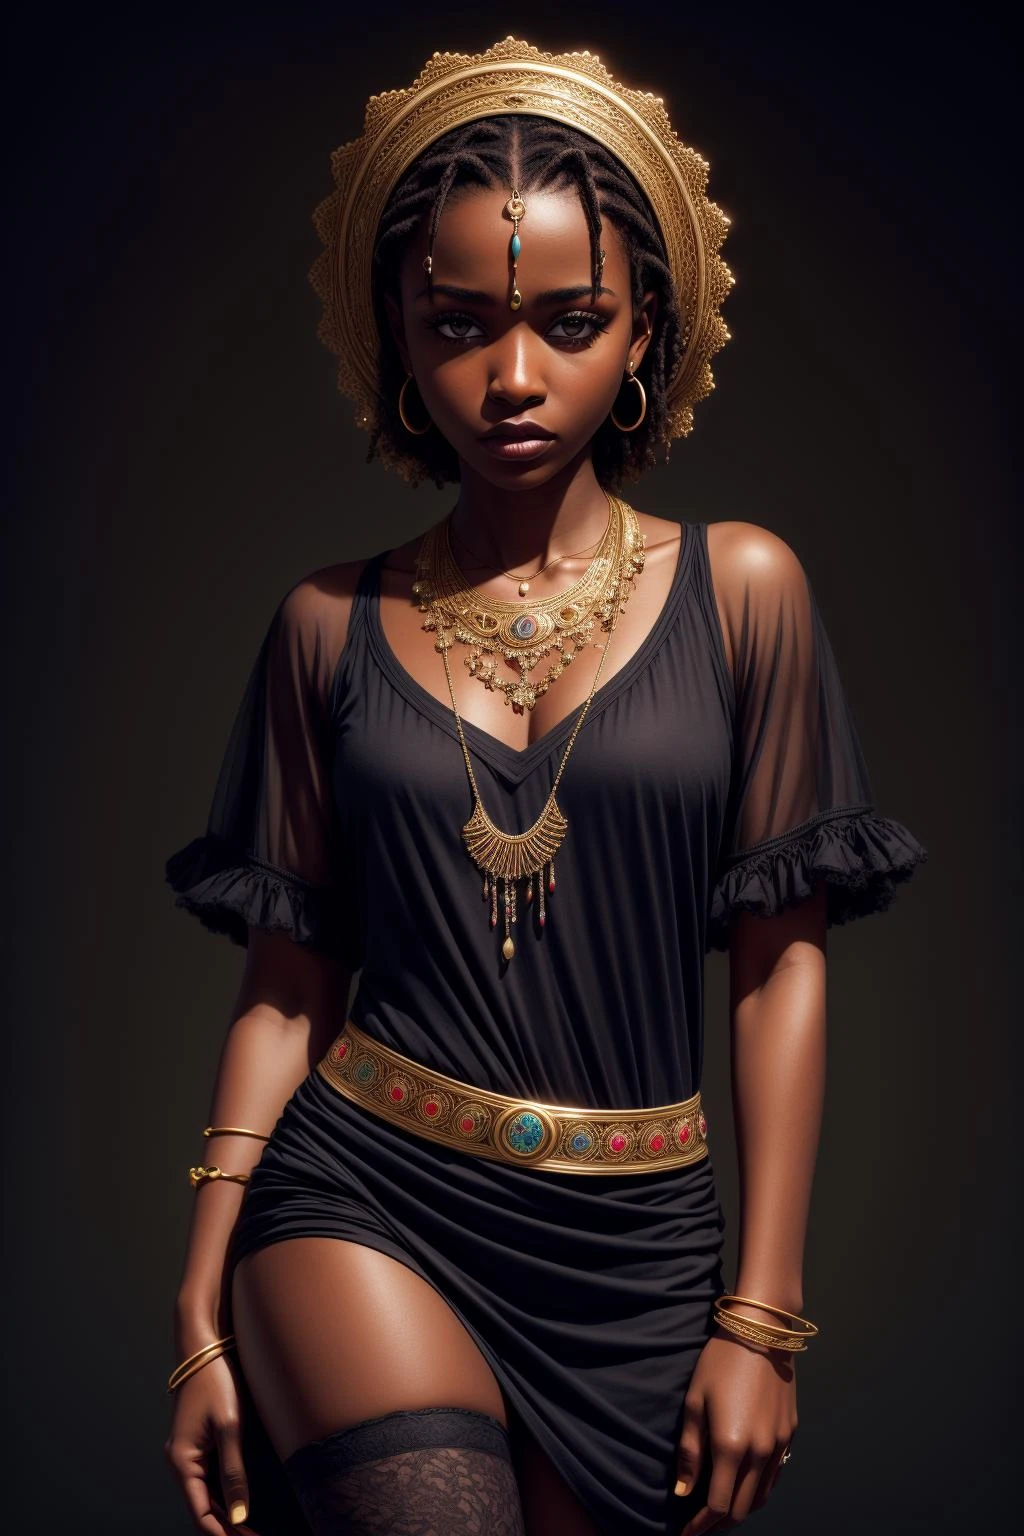 杰作, 最好的质量, 超高分辨率, 1 名黑皮肤的非洲女孩, (分形艺术:1.3), 深阴影, 深色主题, 穿着整齐, 项链, 绝望, 